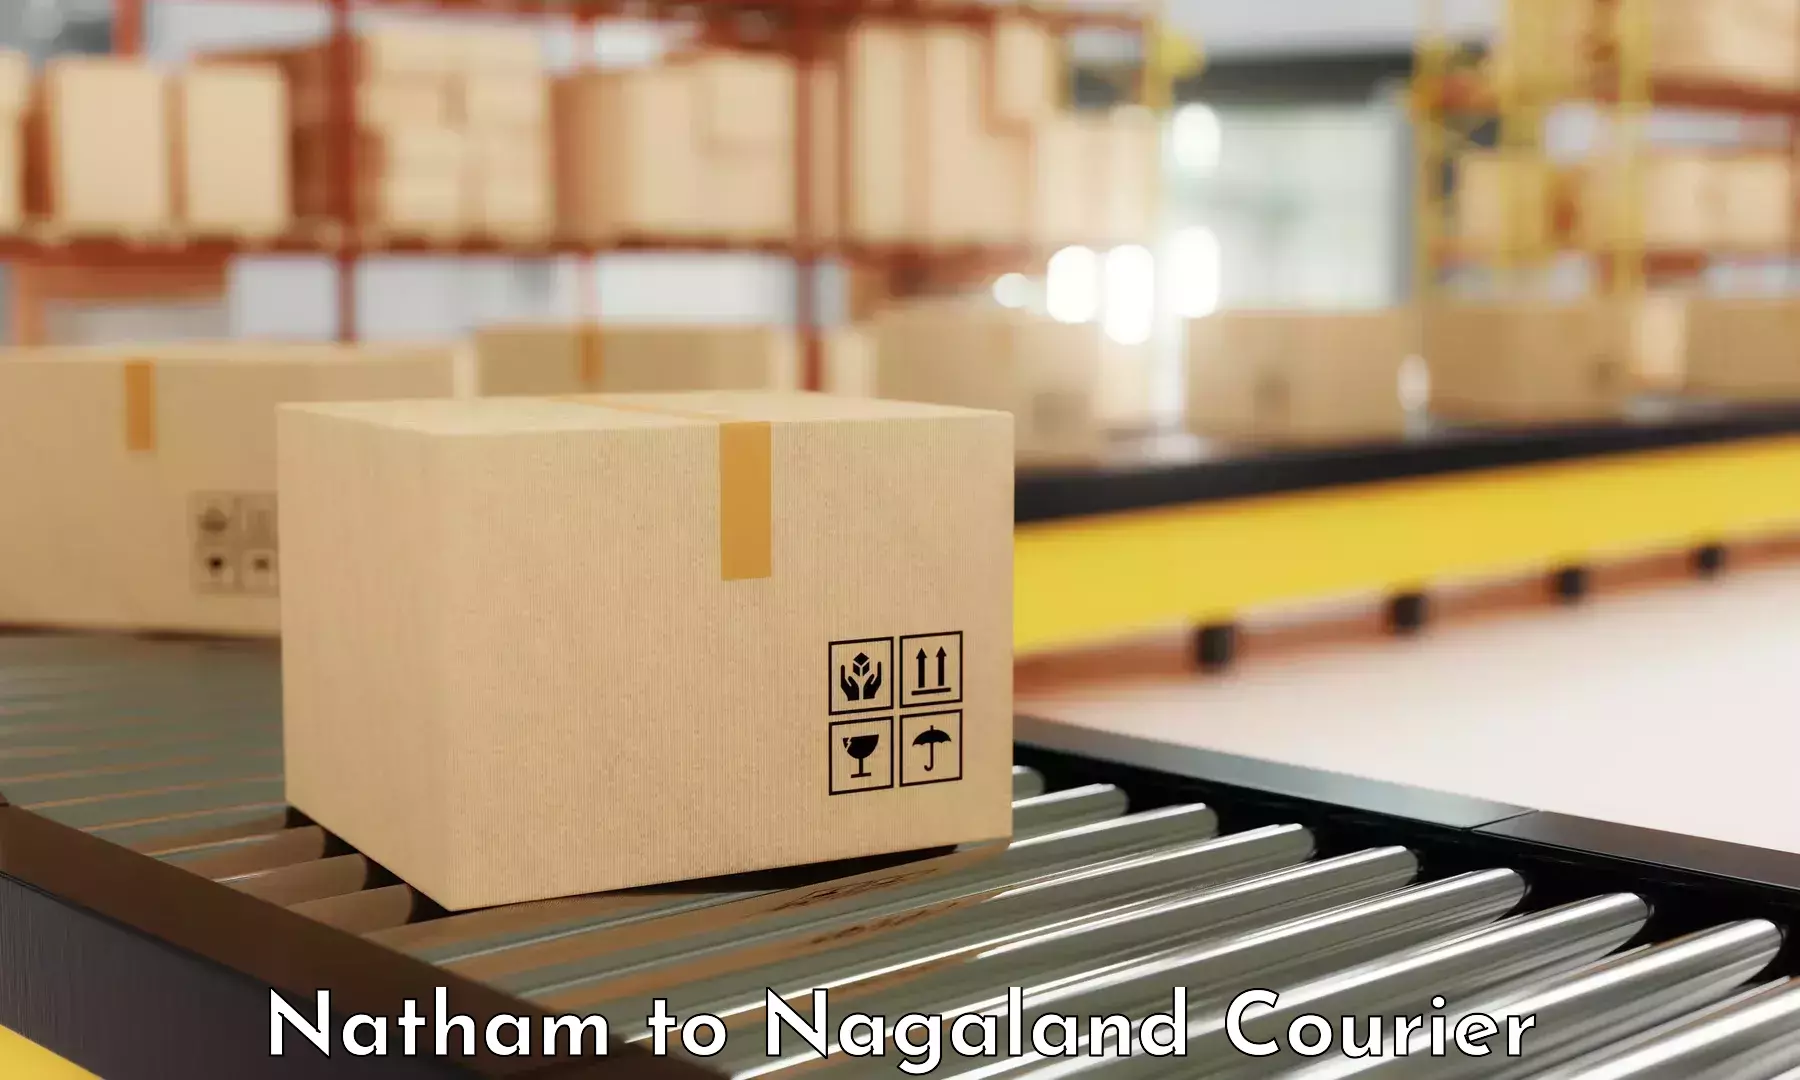 Optimized courier strategies Natham to Wokha